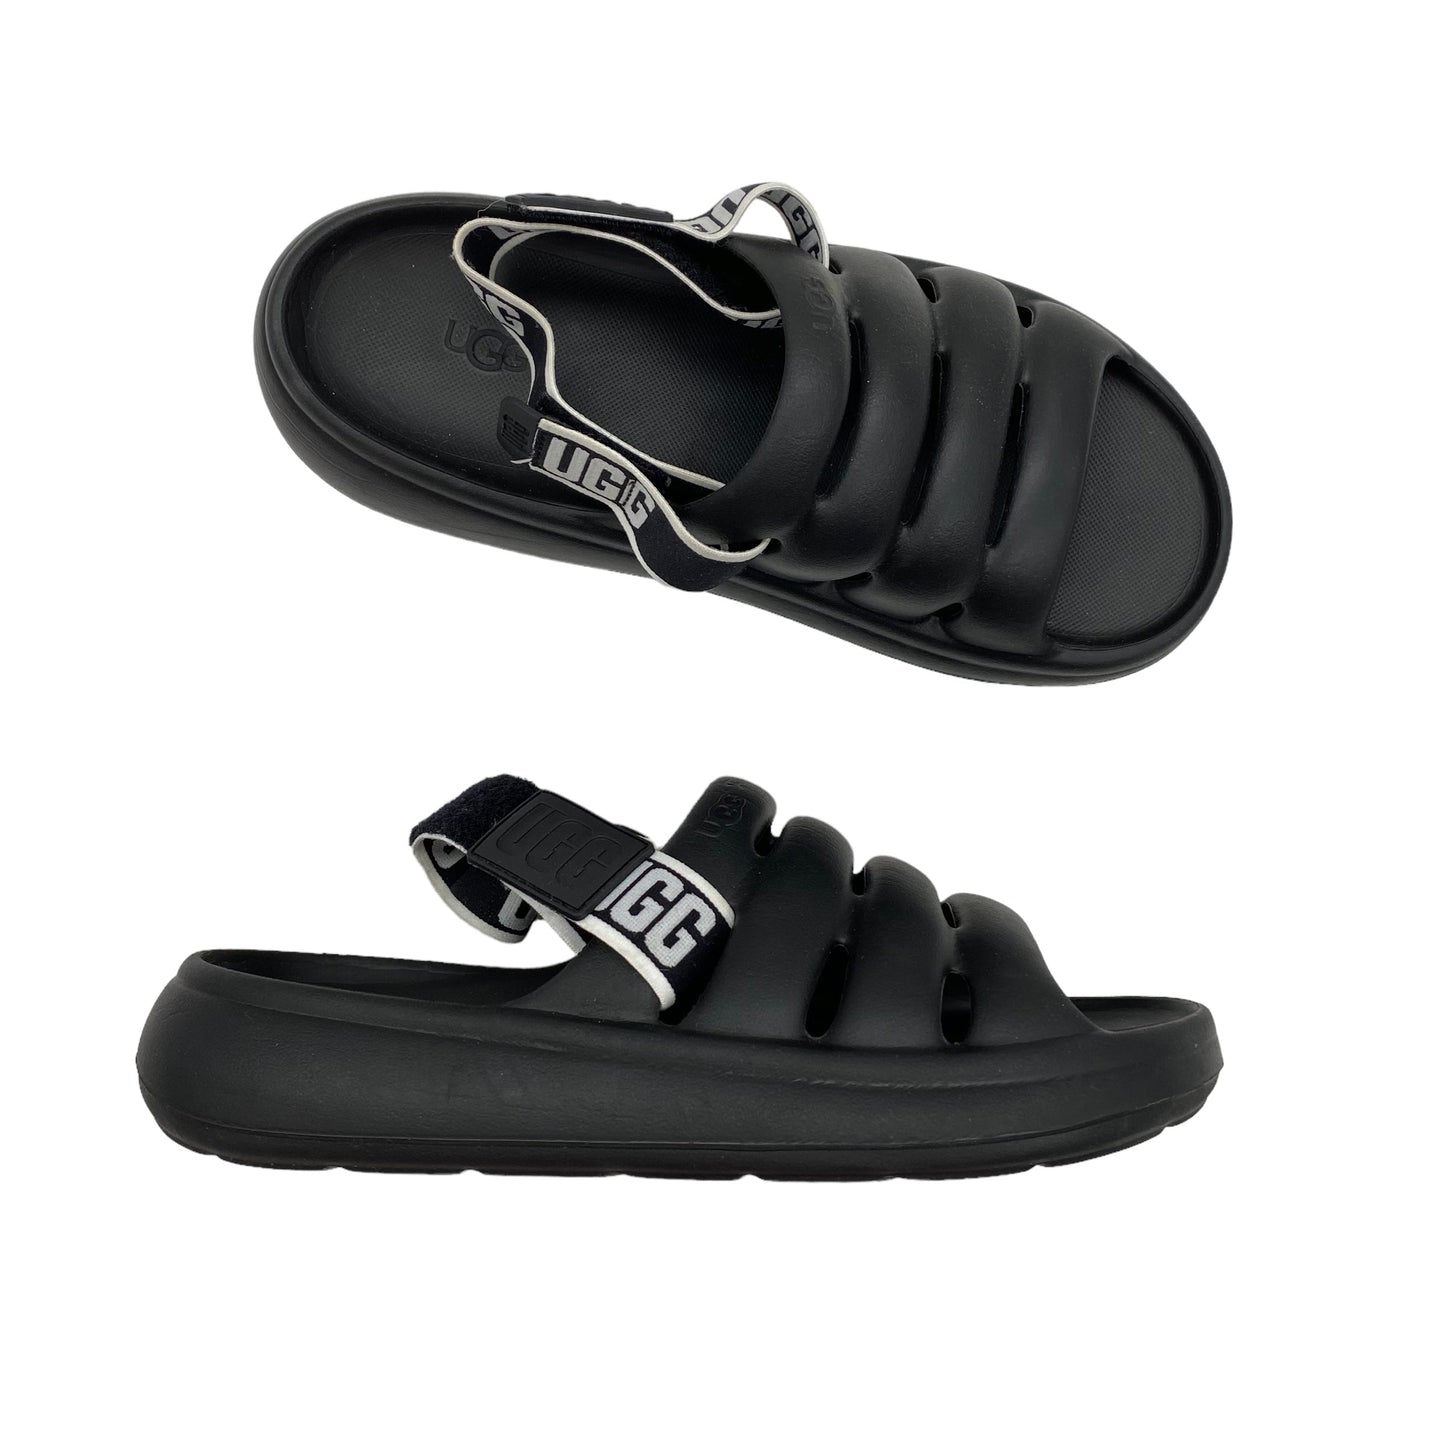 Sandals Designer By Ugg  Size: 9